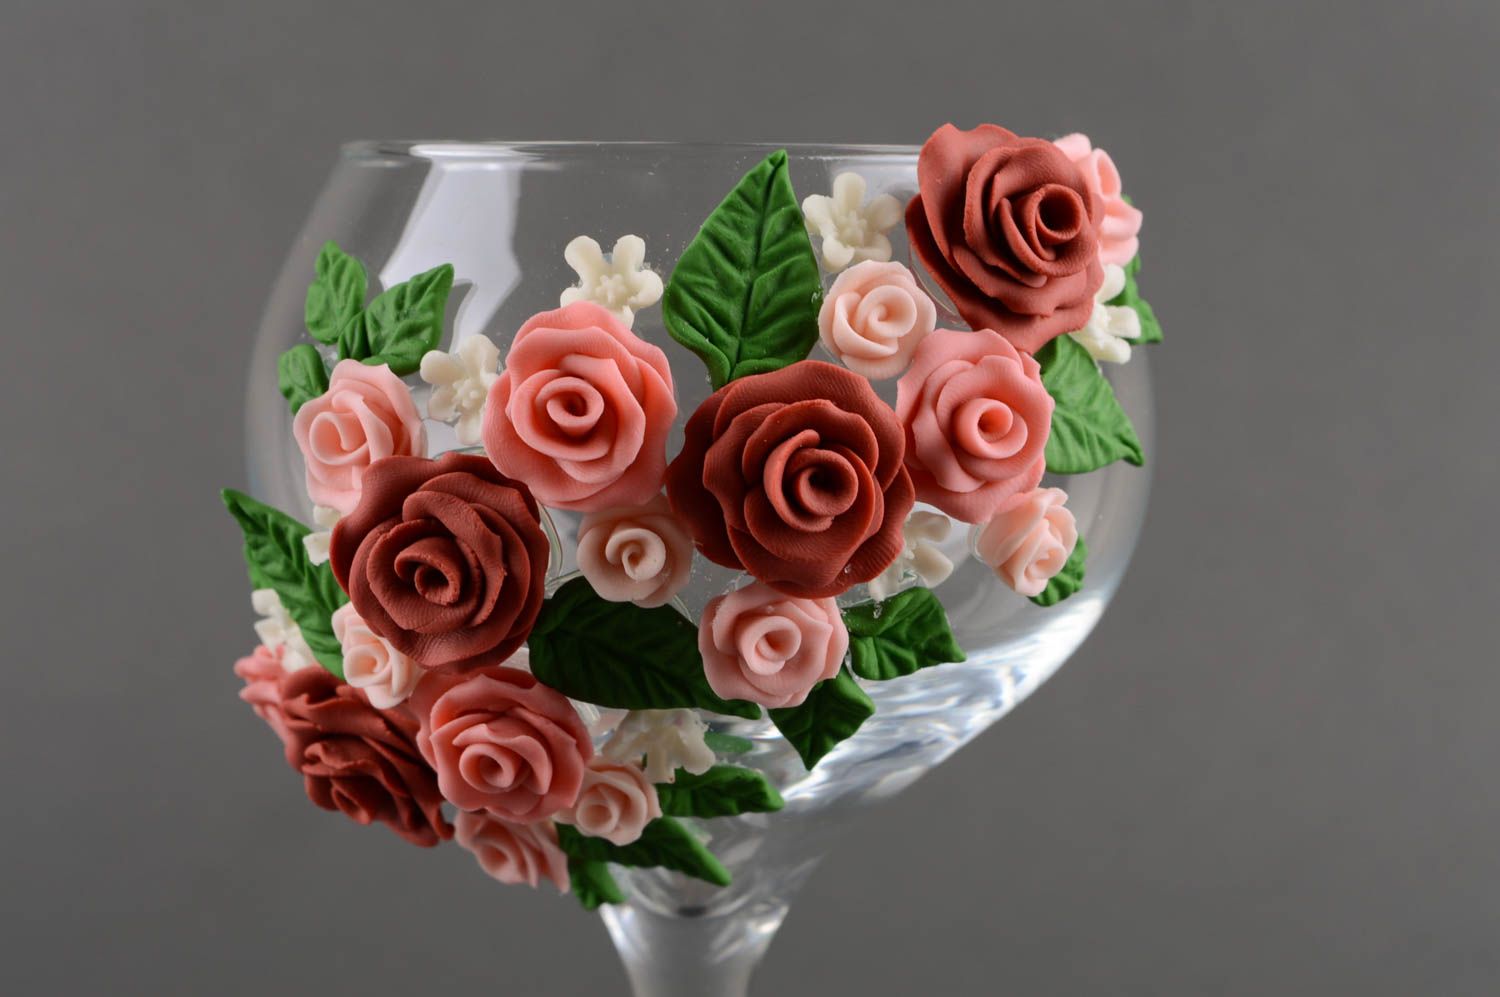 Coupes à champagne fait main Vaisselle en verre Cadeau mariage avec roses 2 pcs photo 2